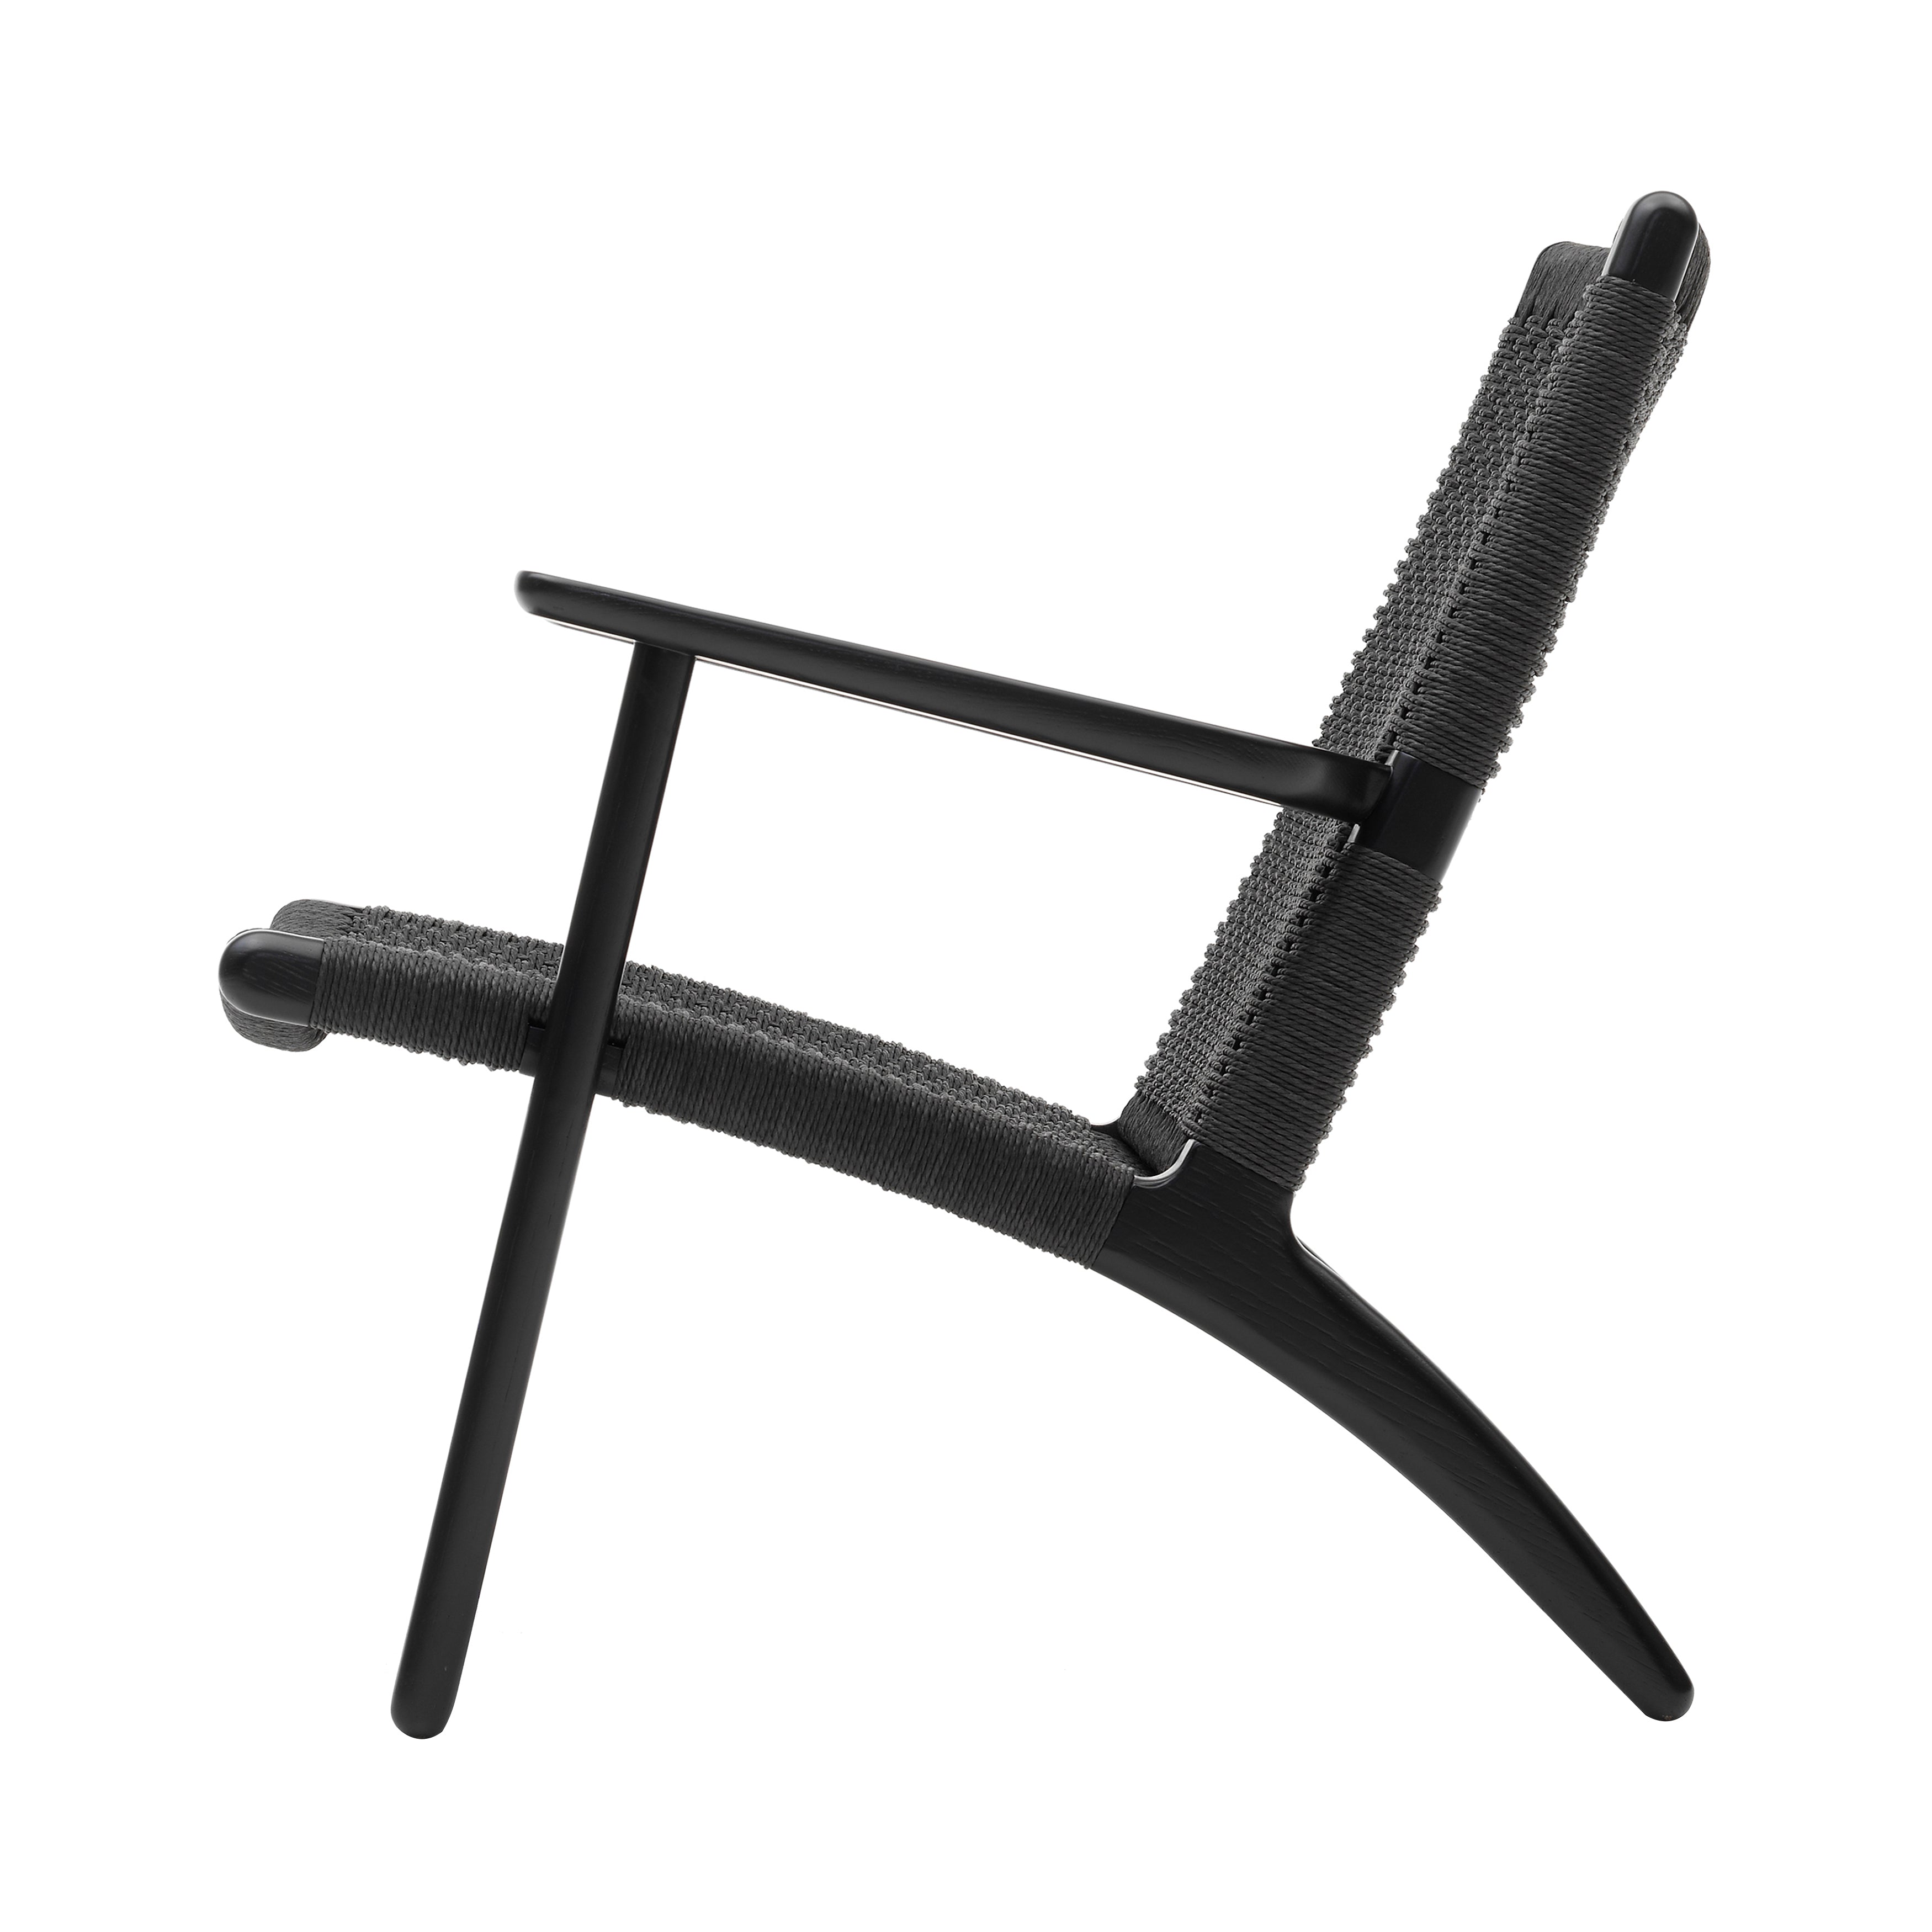 CH25 Lounge Chair: Black + Black Oak